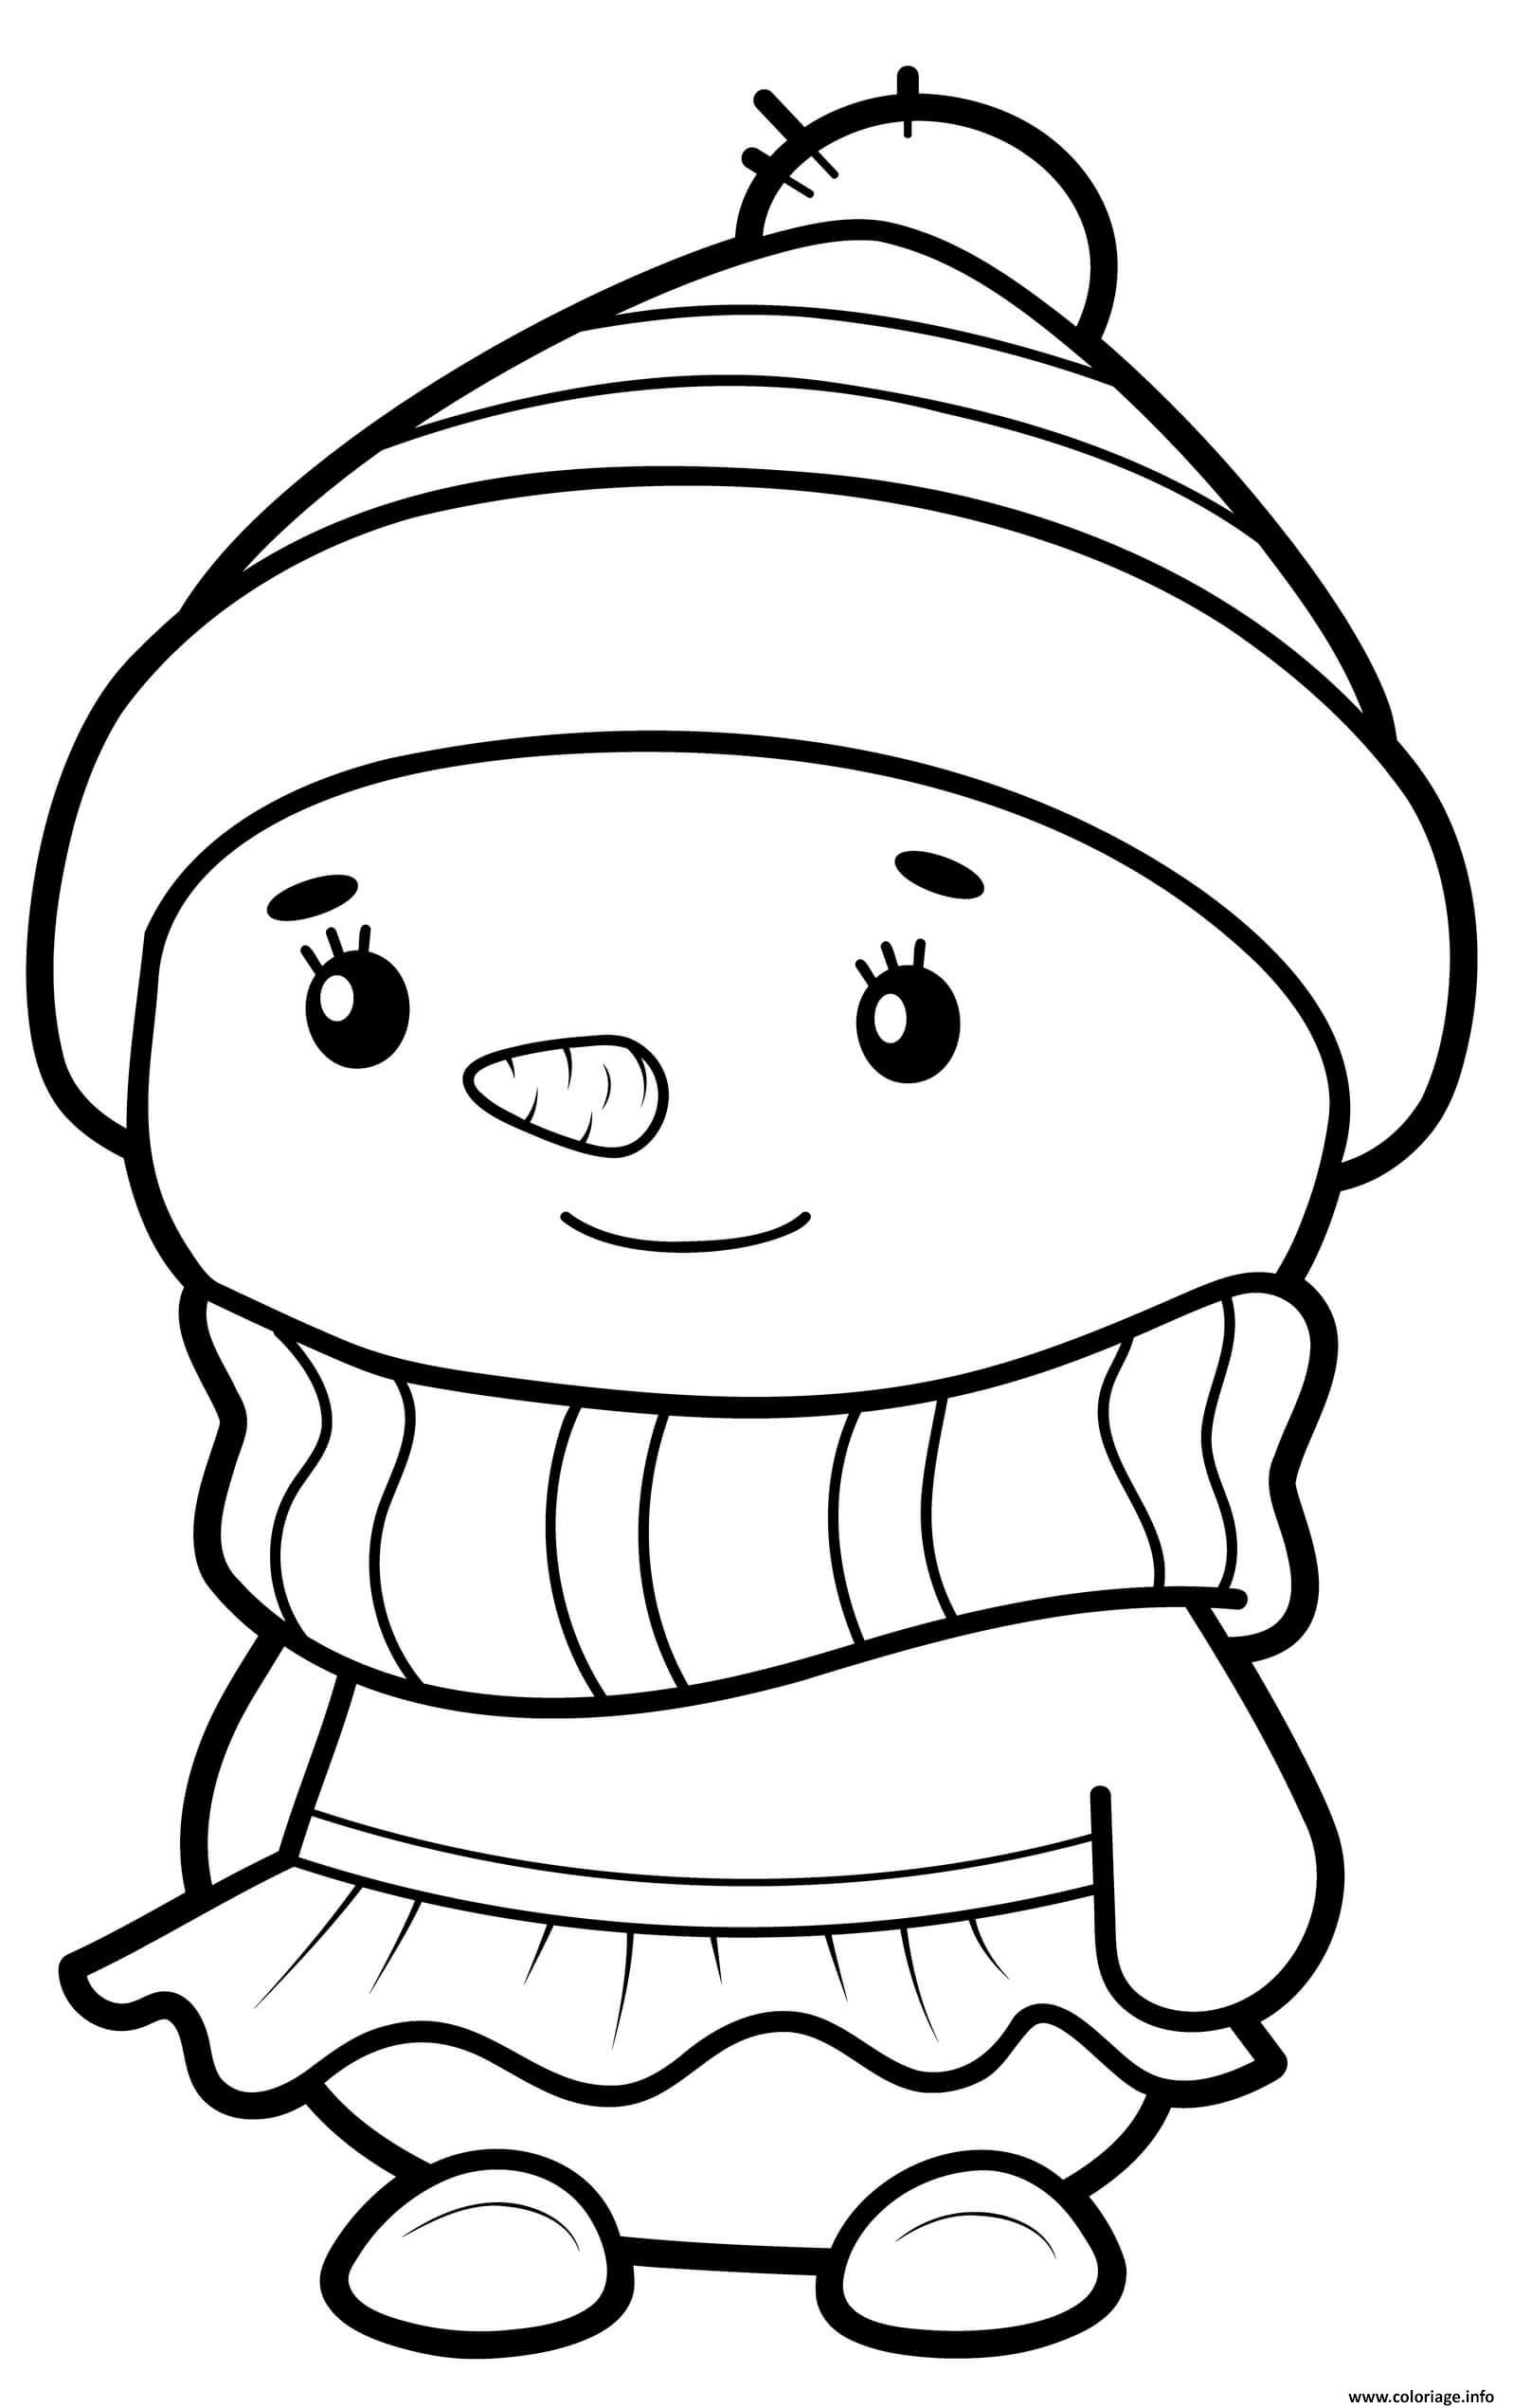 Coloriage Bonhomme De Neige Fille Habille Avec Une Robe Et Un Chapeau Dessin à Imprimer